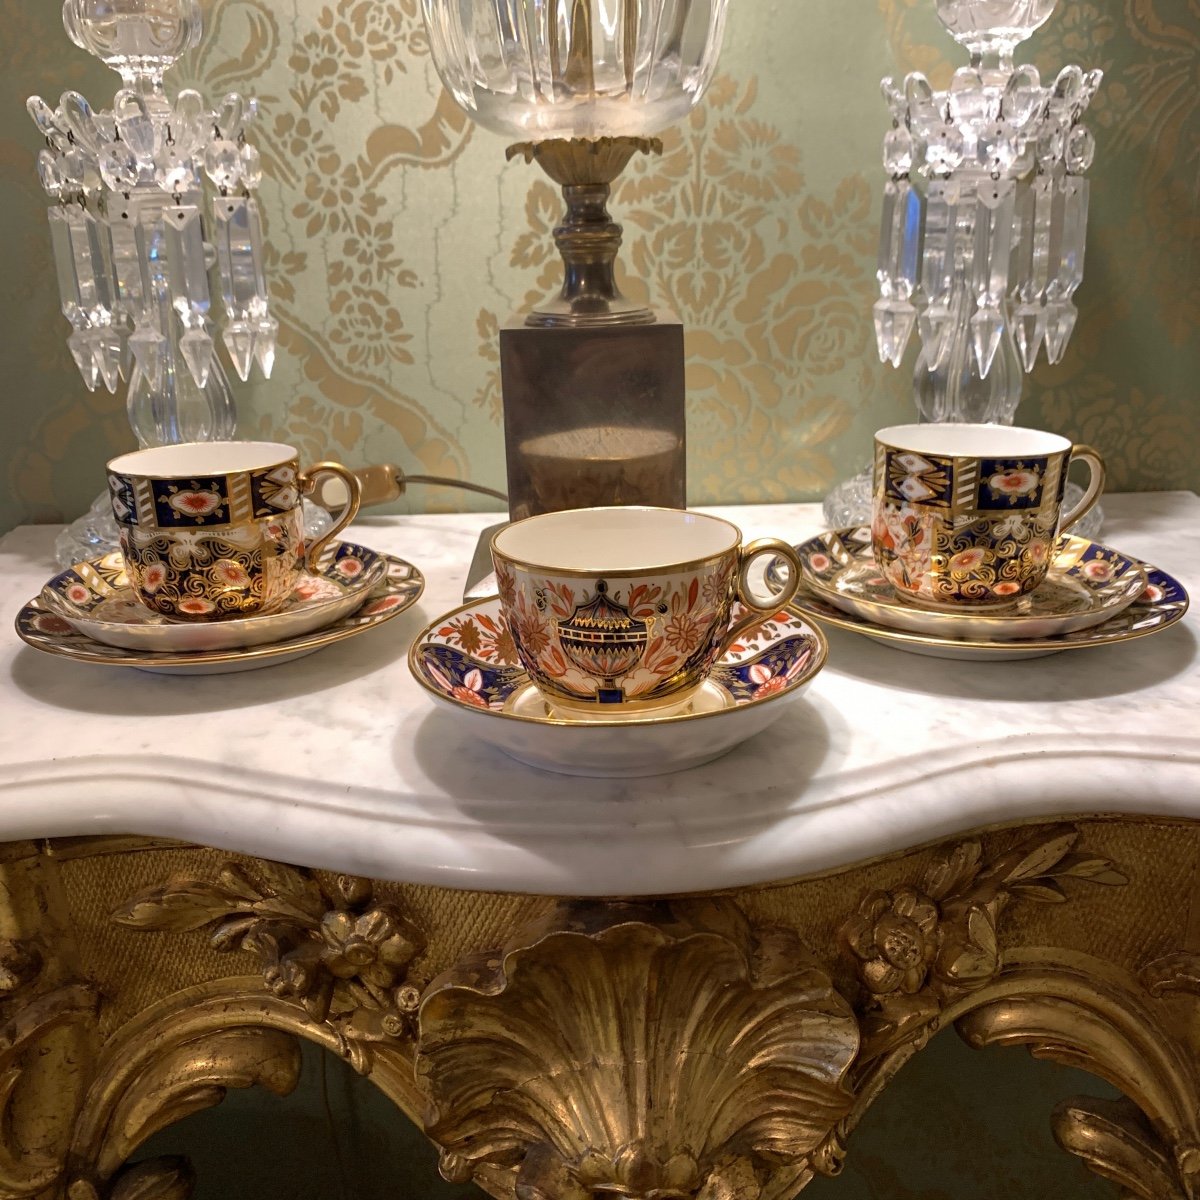 La tasse à thé anglaise – l'art de porcelaine